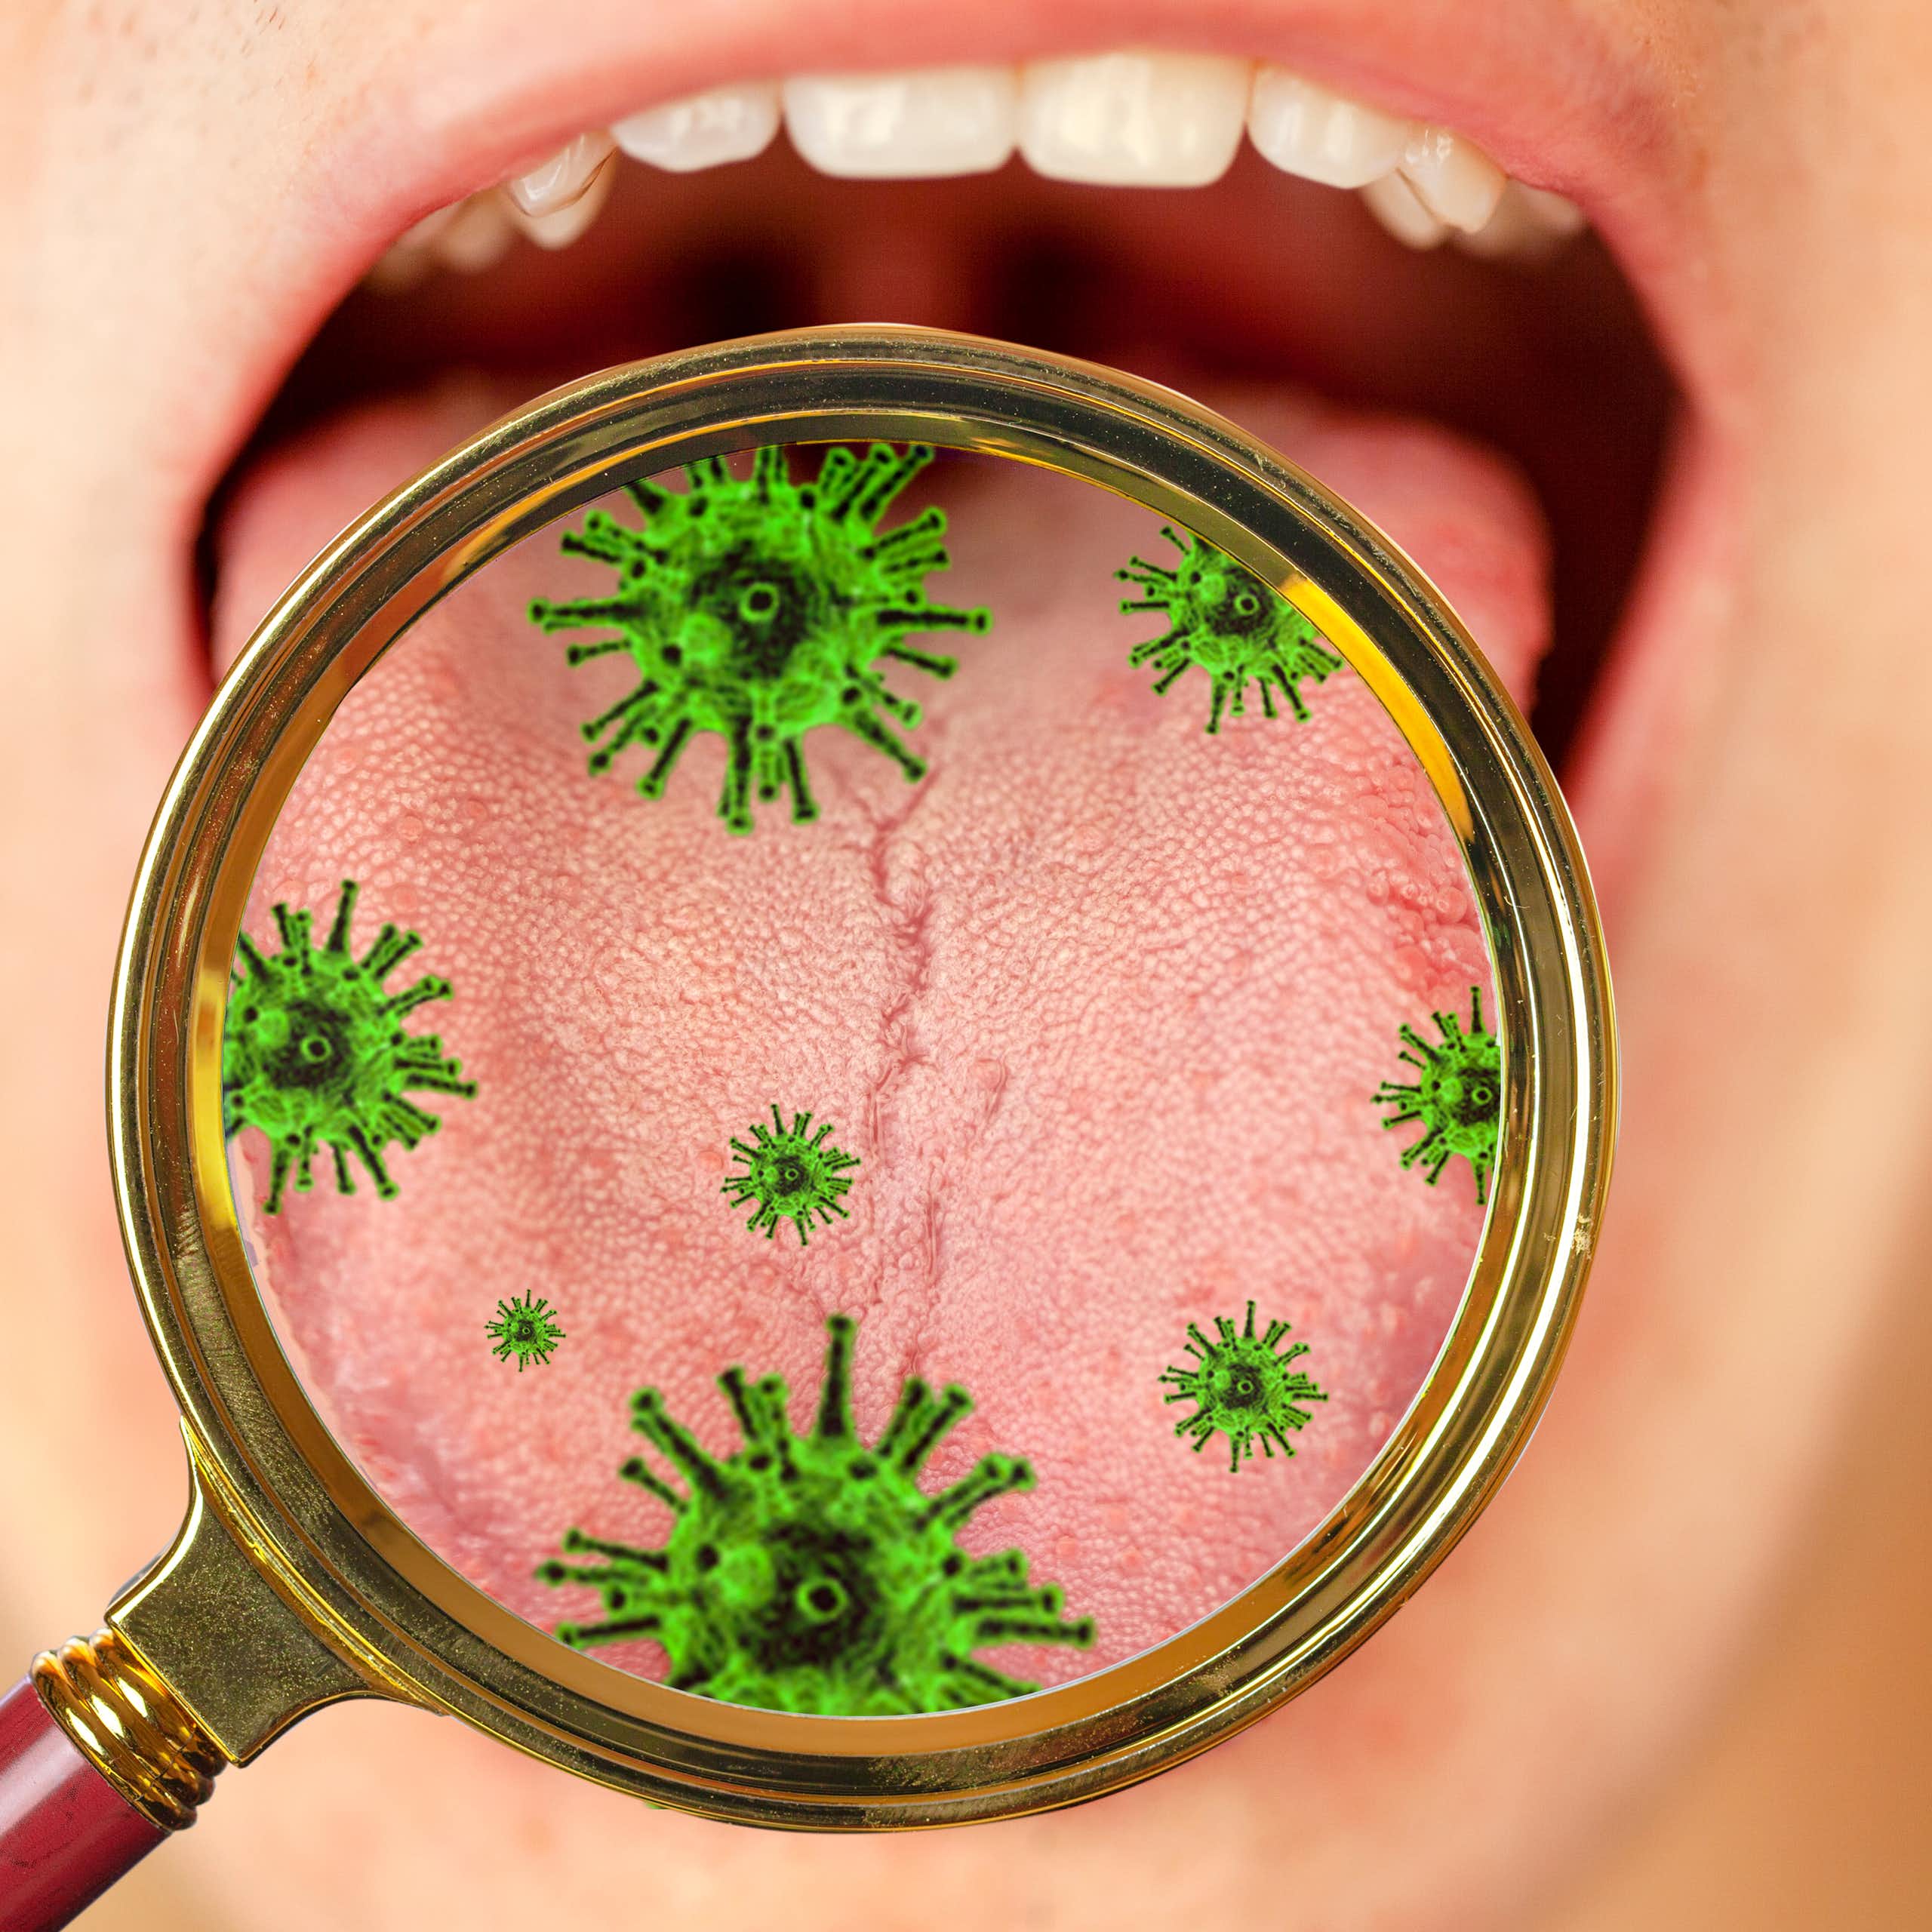 Uma pessoa mantém a boca aberta, enquanto uma lente de aumento ilustra as bactérias encontradas nela.